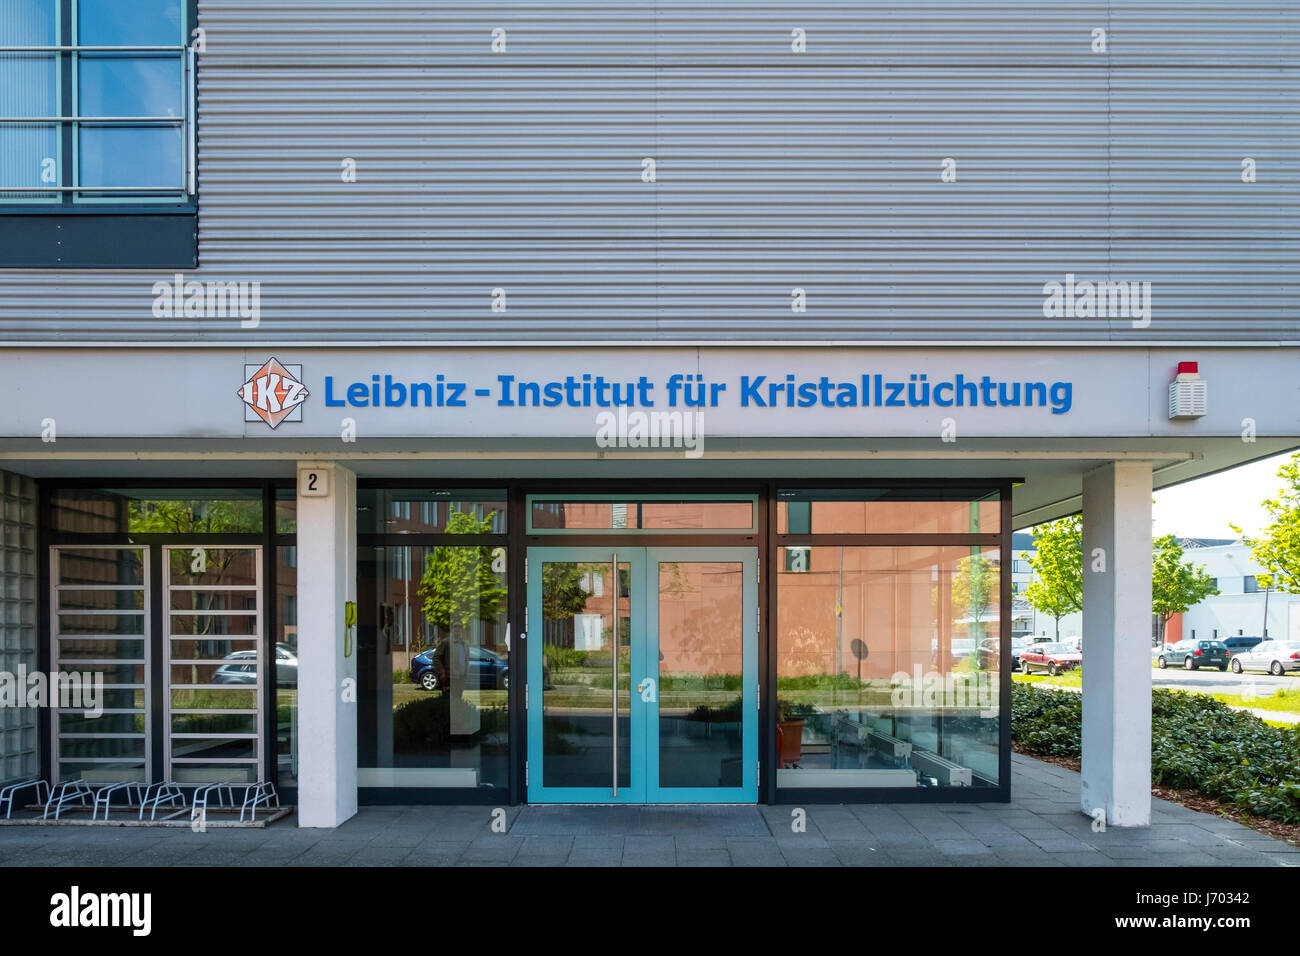 Liebniz Instituto para cultivo de cristal (LKZ Kristallzuchtung) en Adlershof Parque de Ciencia y Tecnología Parque en Berlín, Alemania Foto de stock